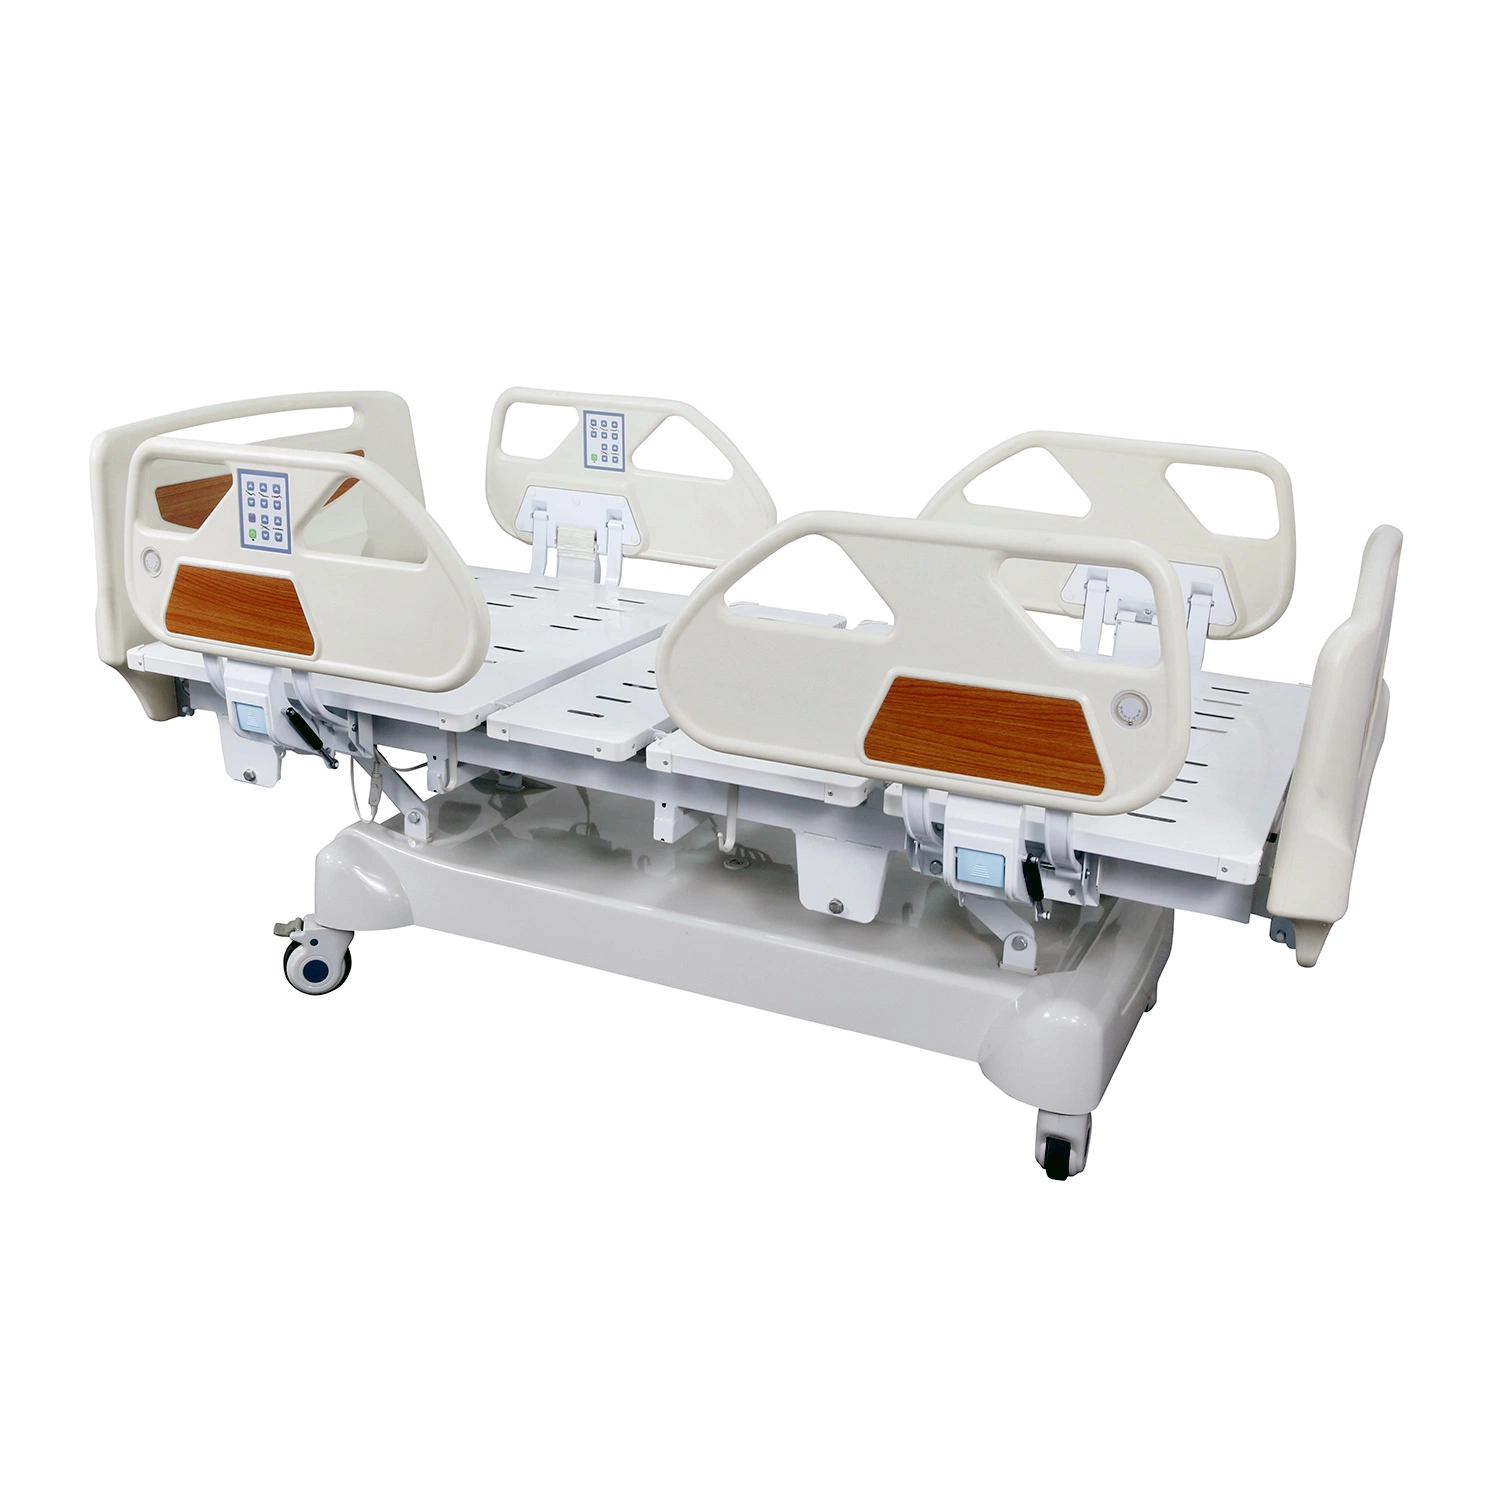 Mobiliario Comercial ICU Hospital Bed Manufacturer equipos médicos